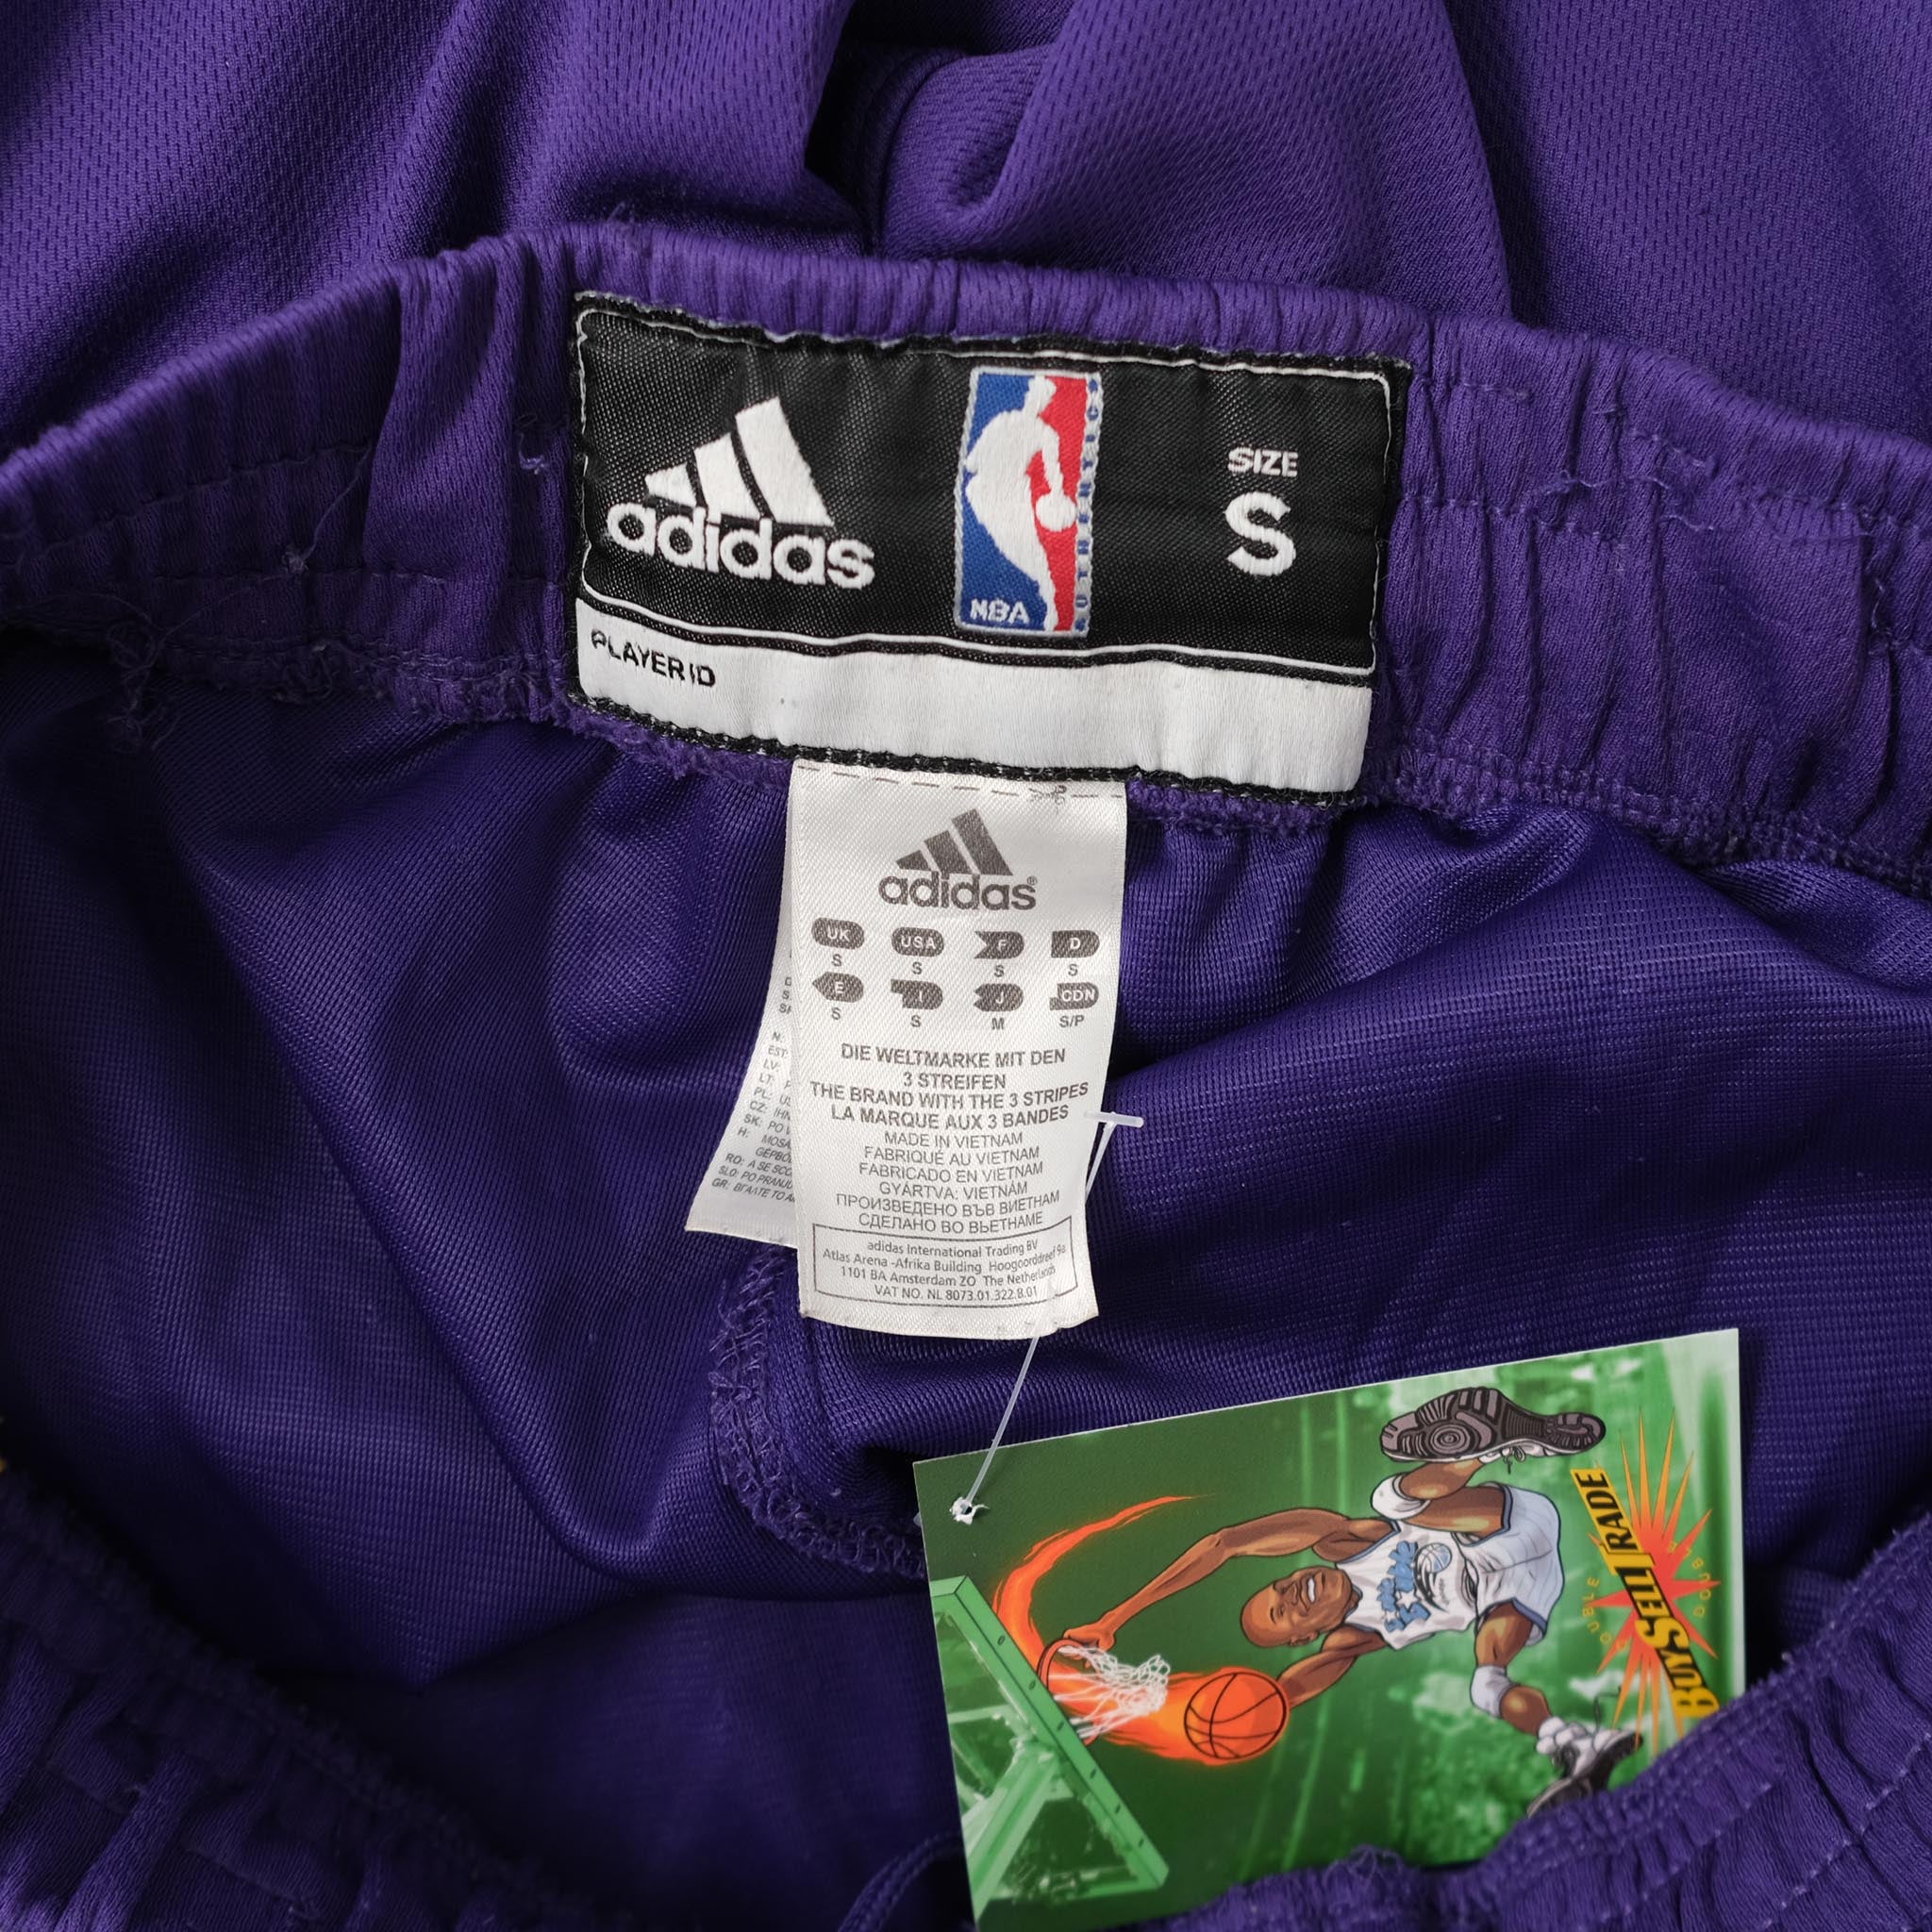 Adidas NBA Los Angeles LA Lakers Basketball Shorts– VNTG Shop